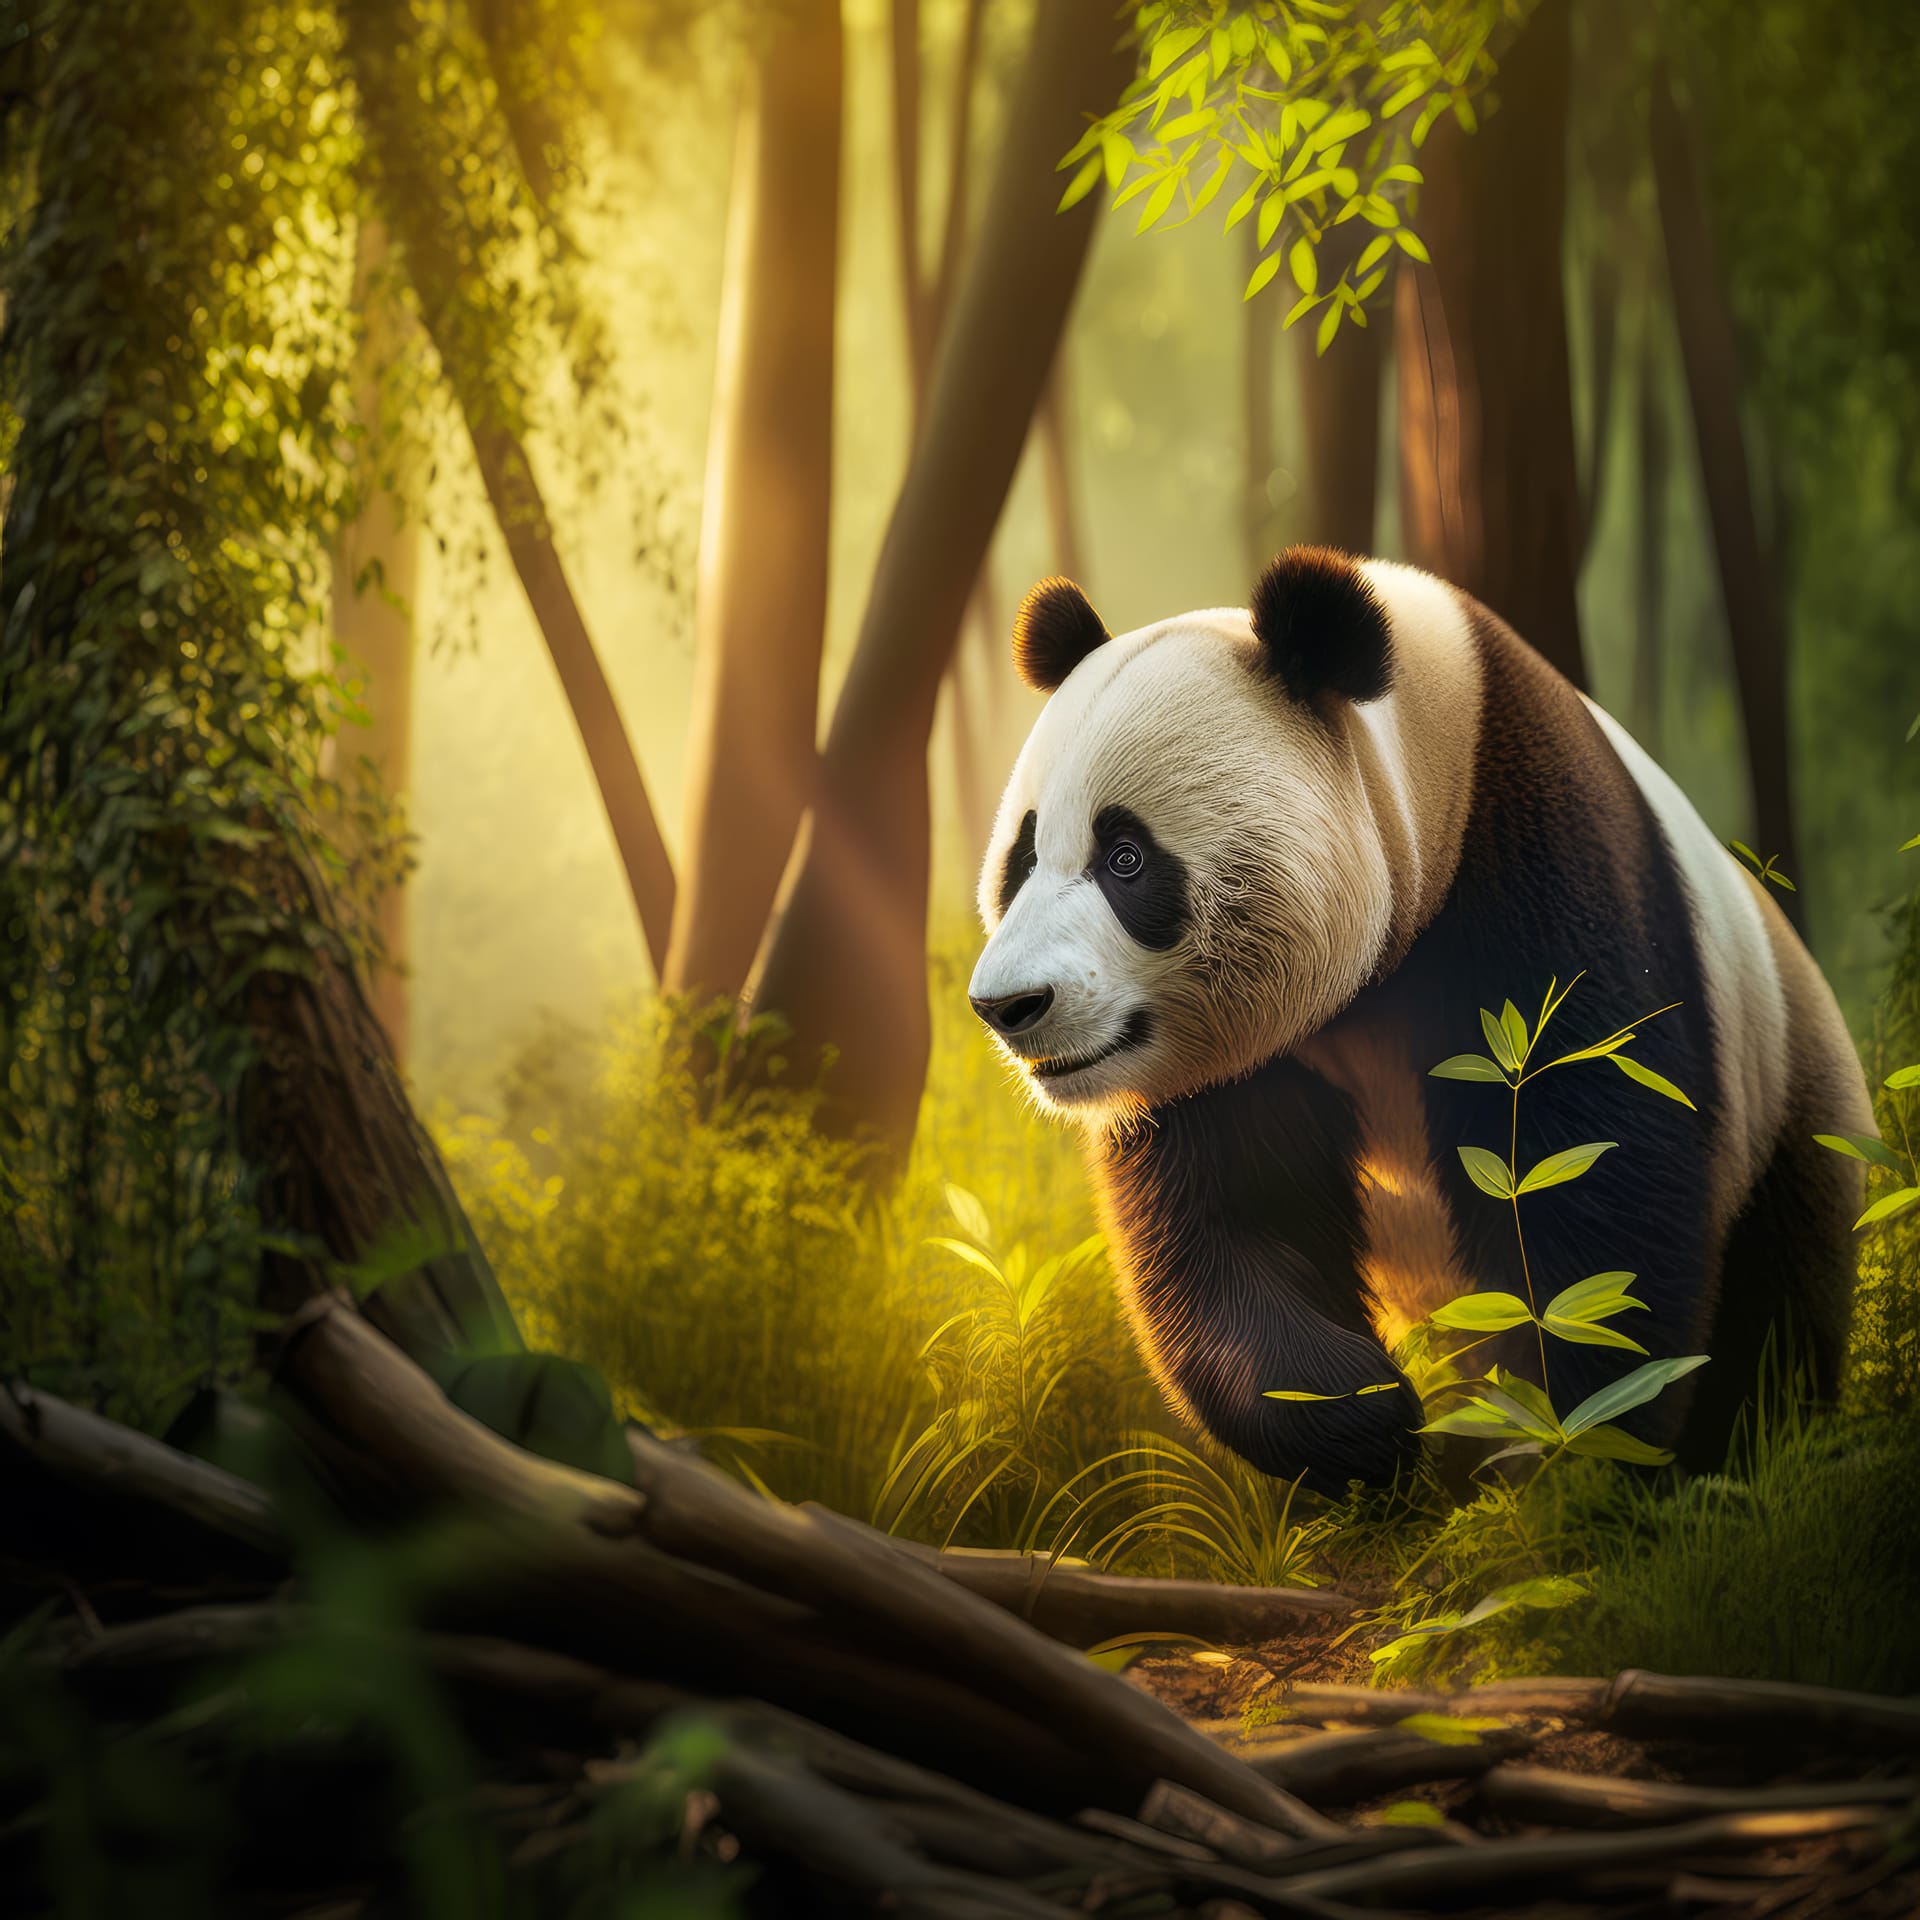 Panda bear walking through forest sunlight